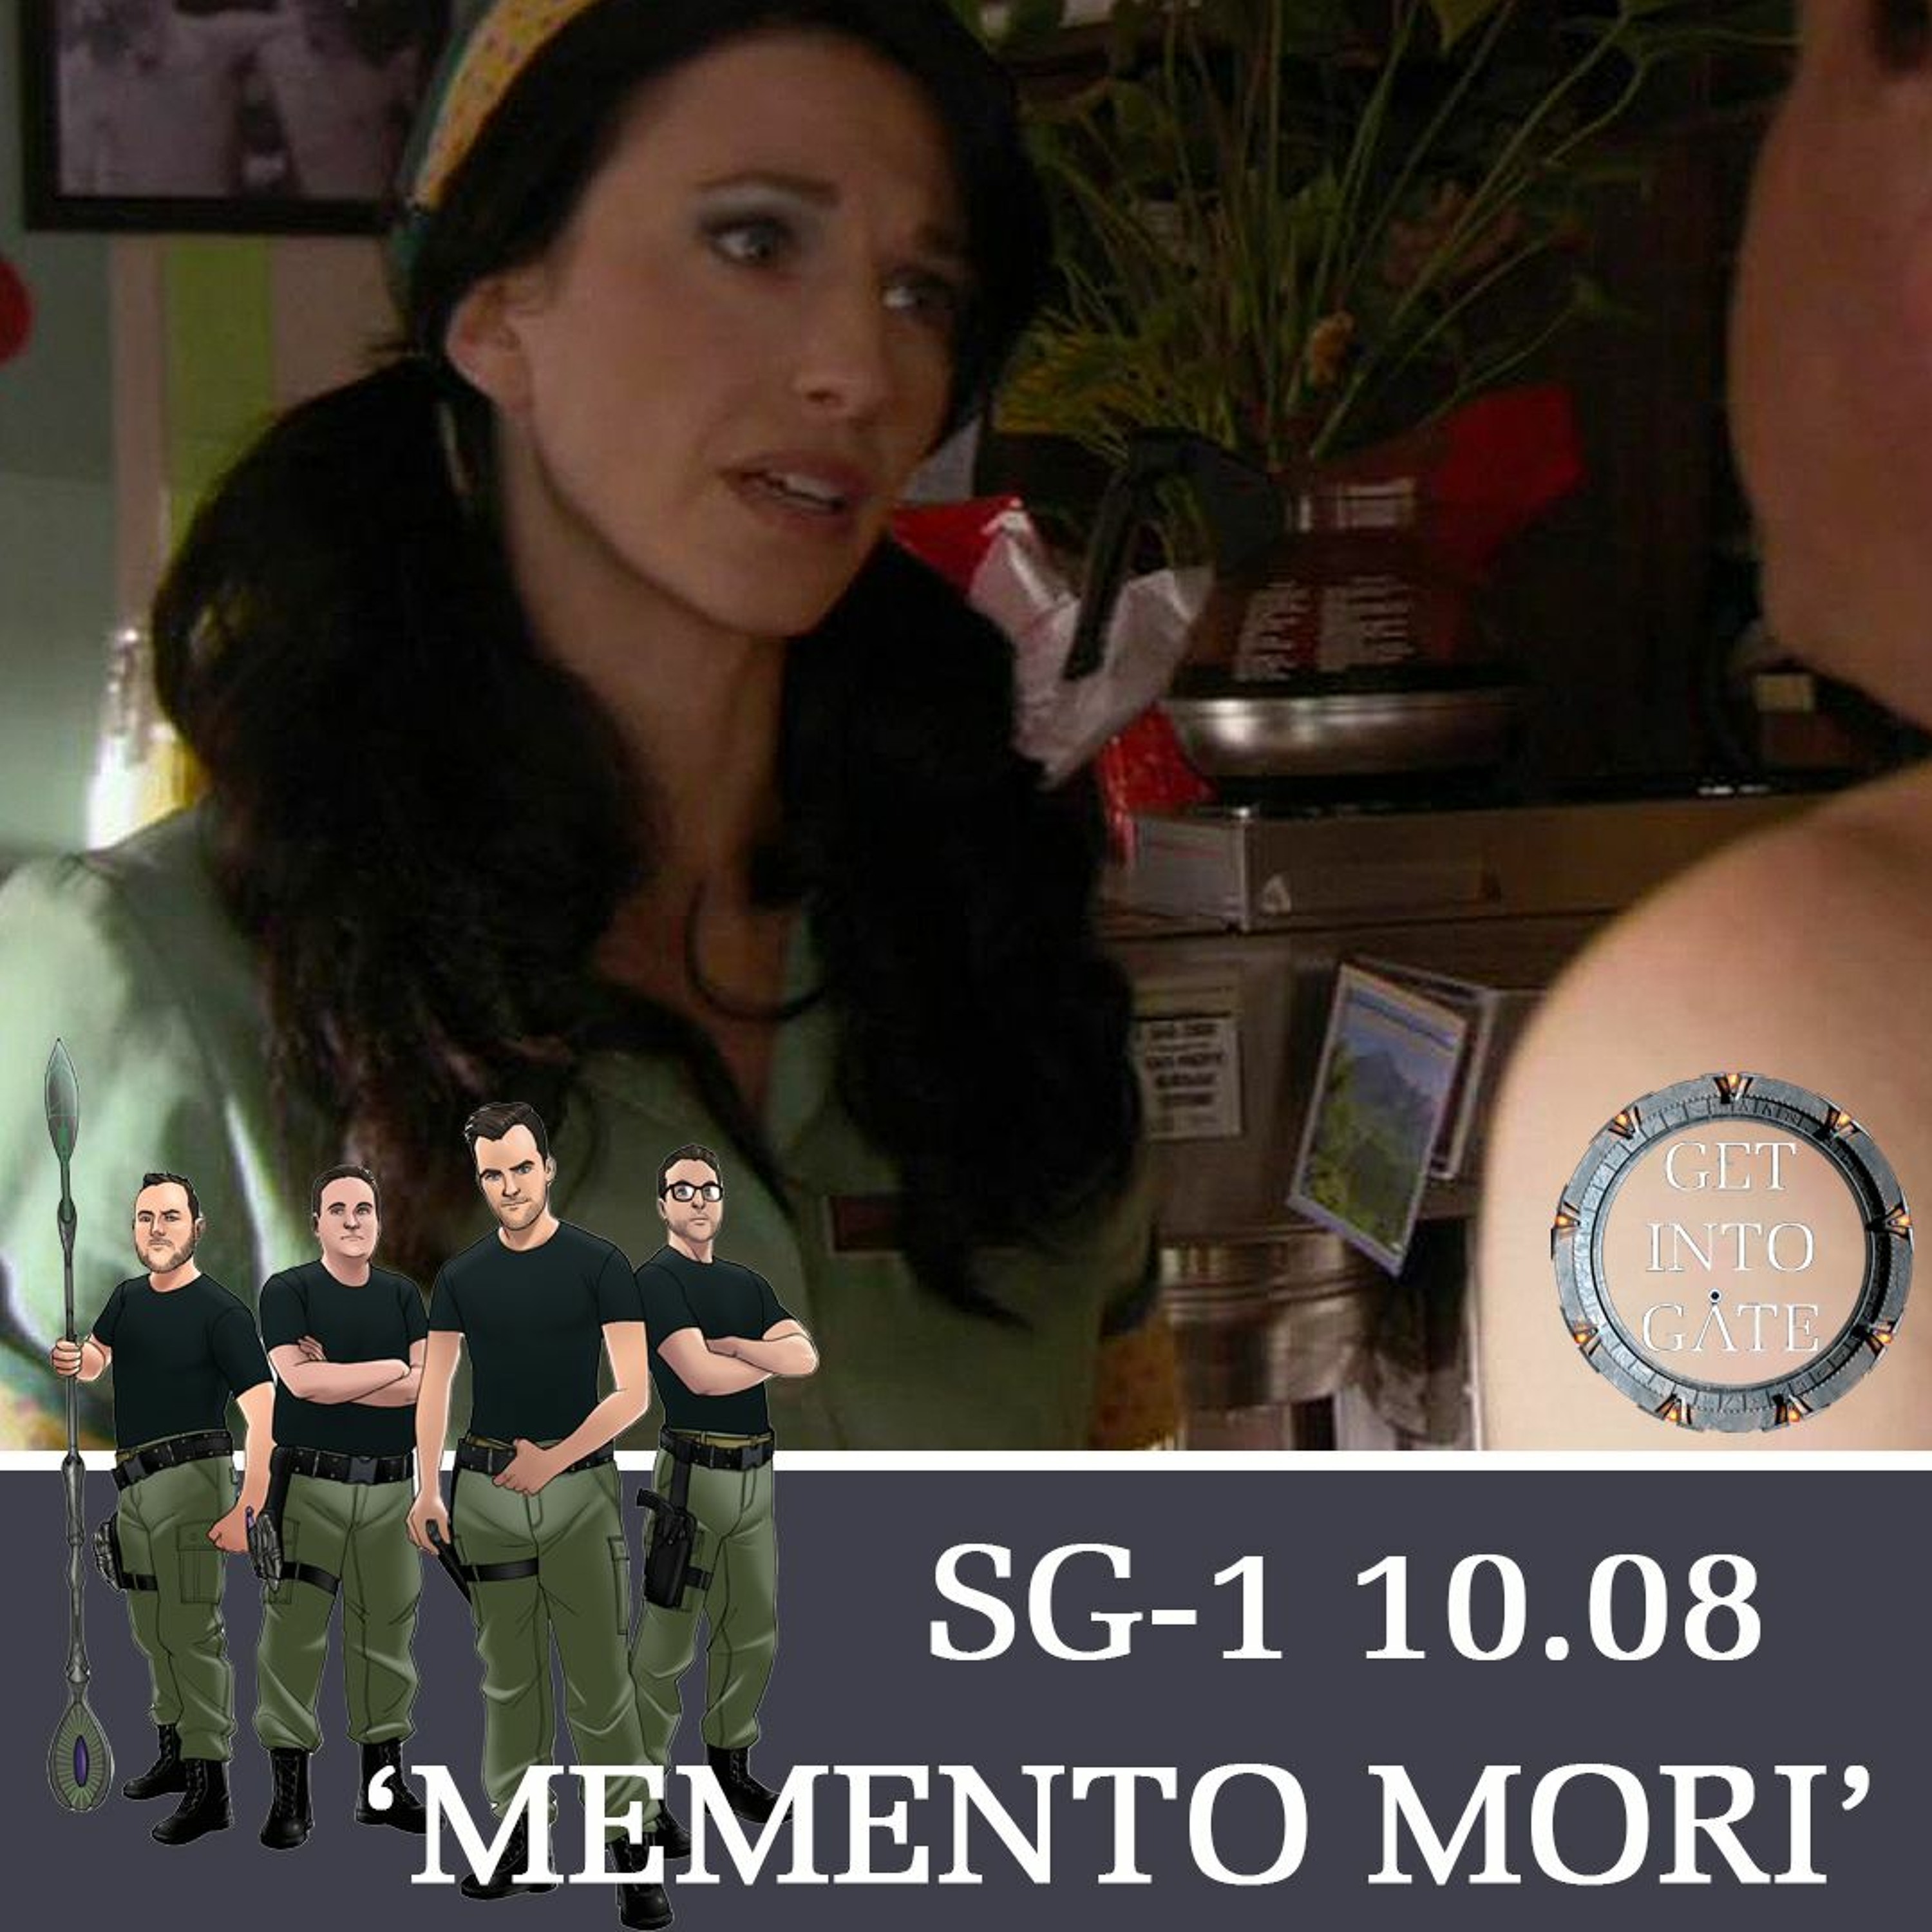 Episode 243: Memento Mori (SG-1 10.08)